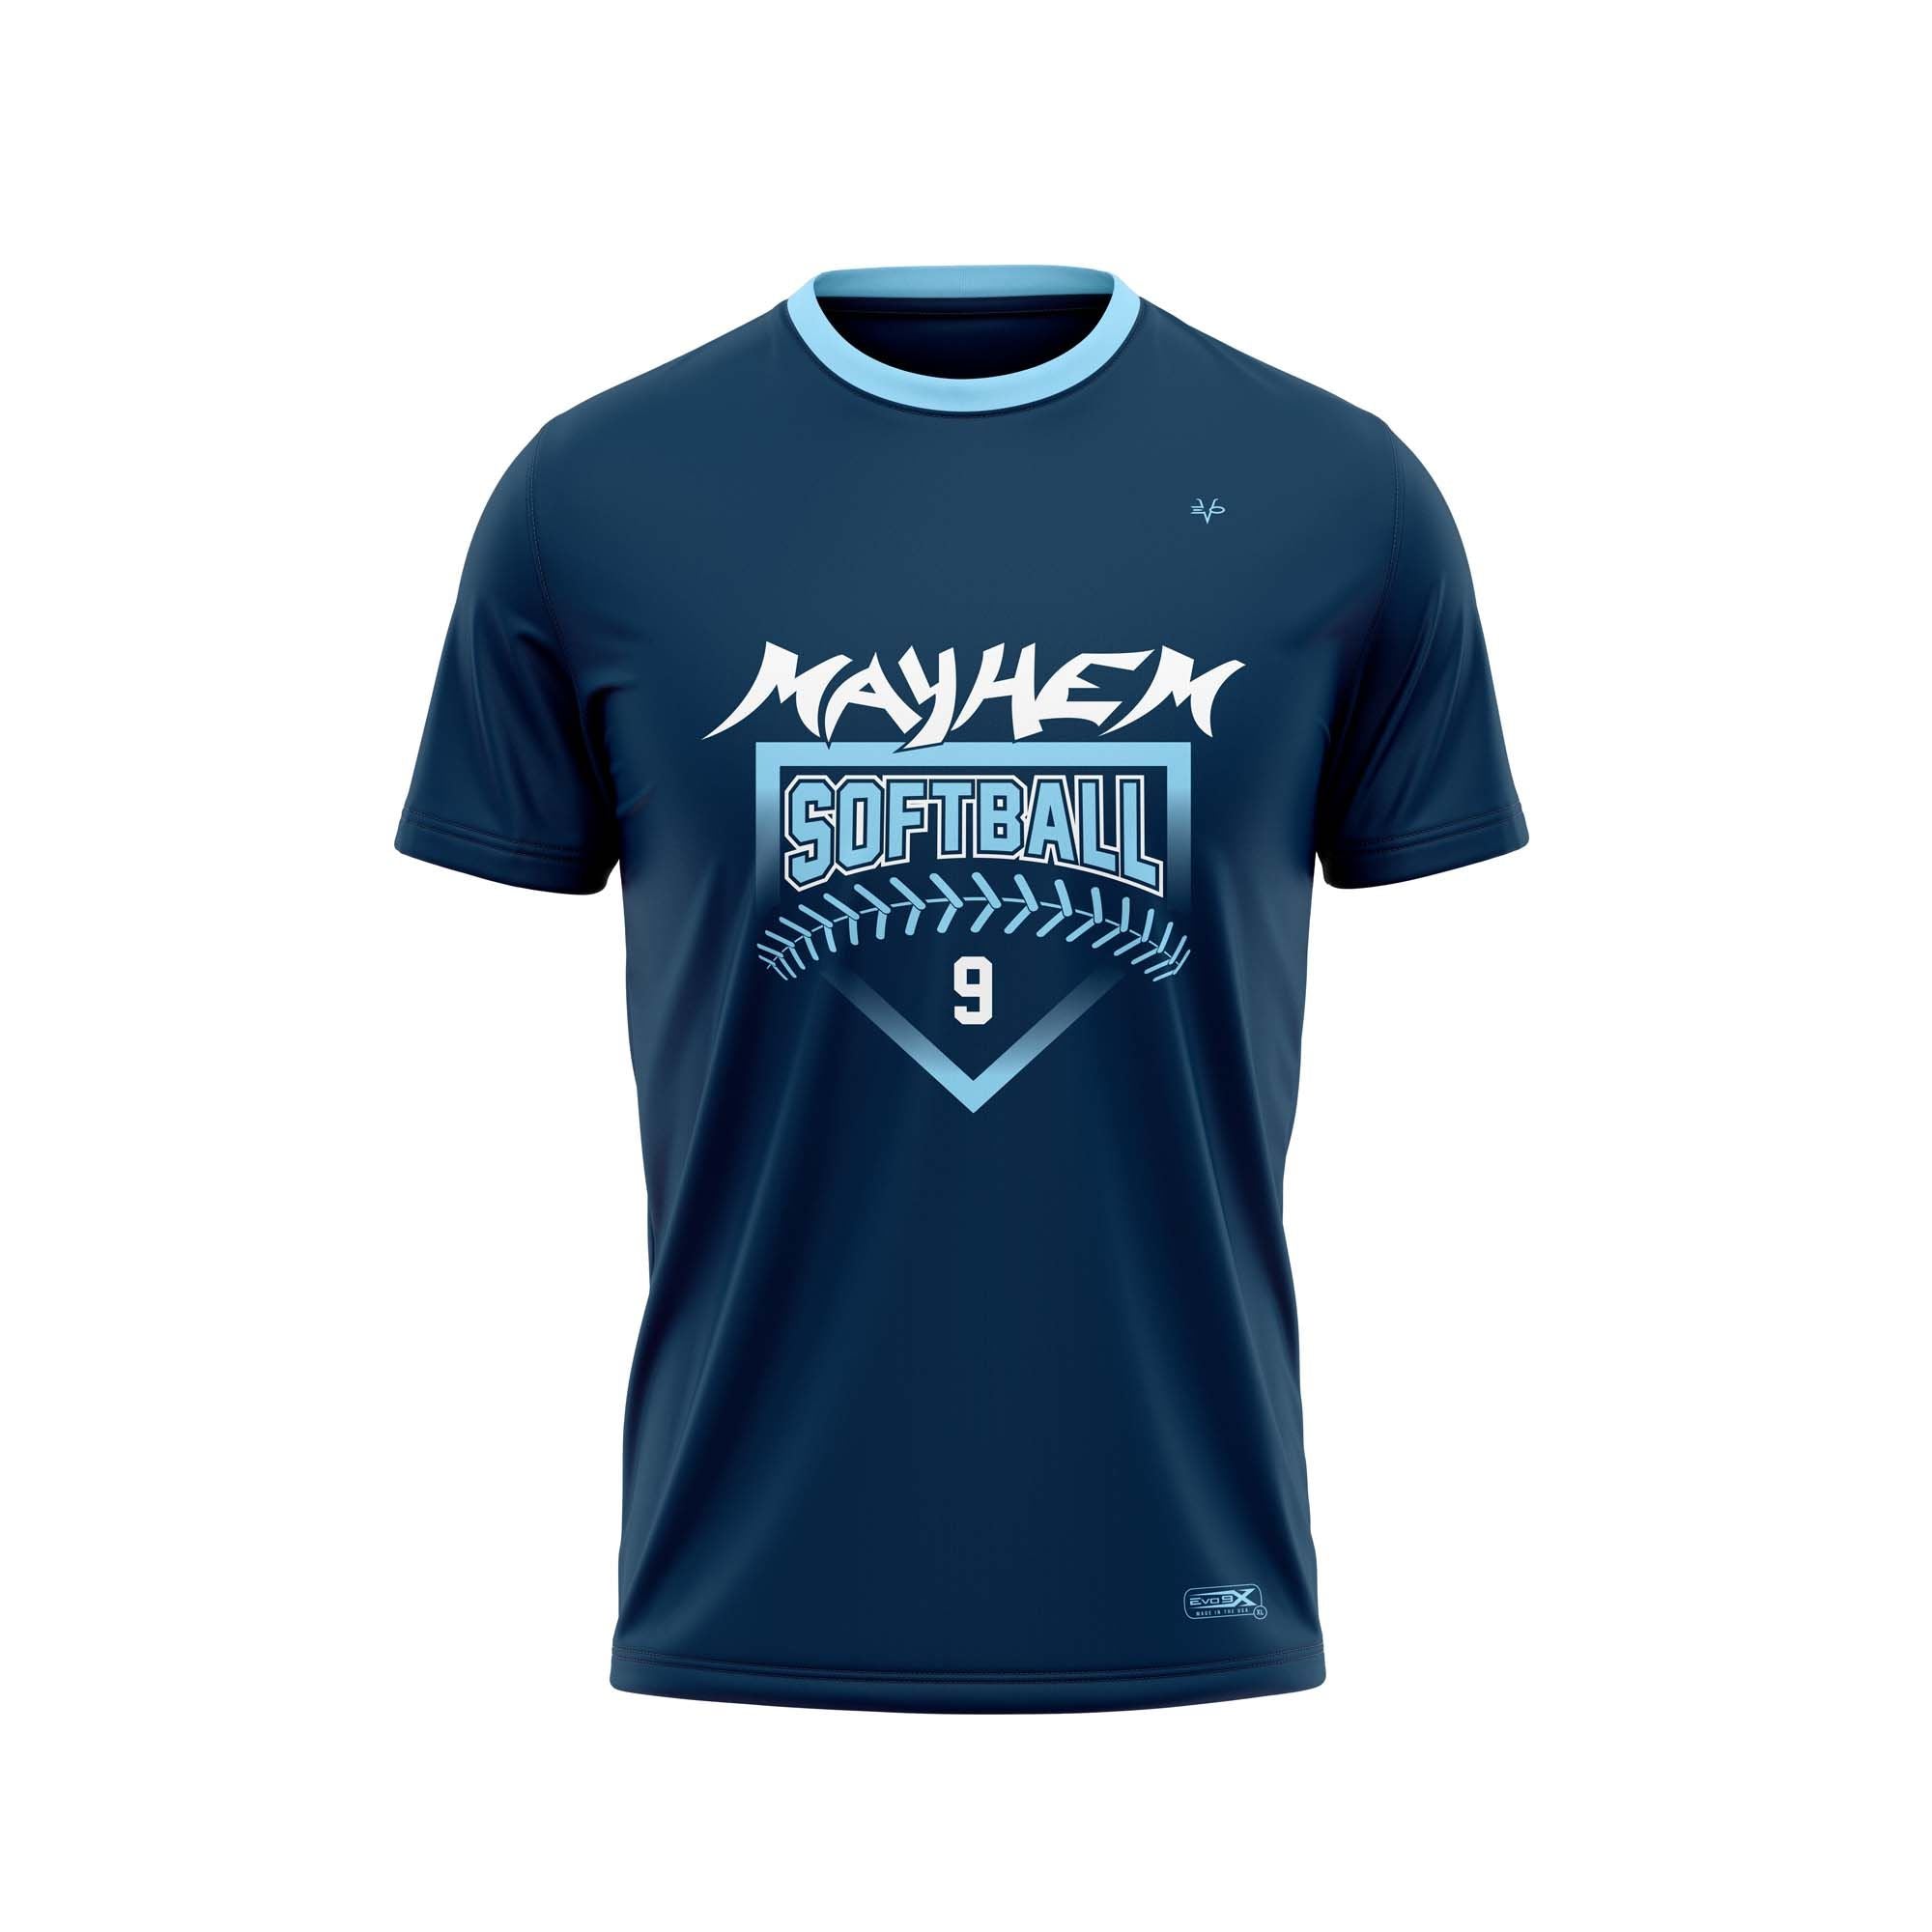 Mayhem Crew Neck Shirt